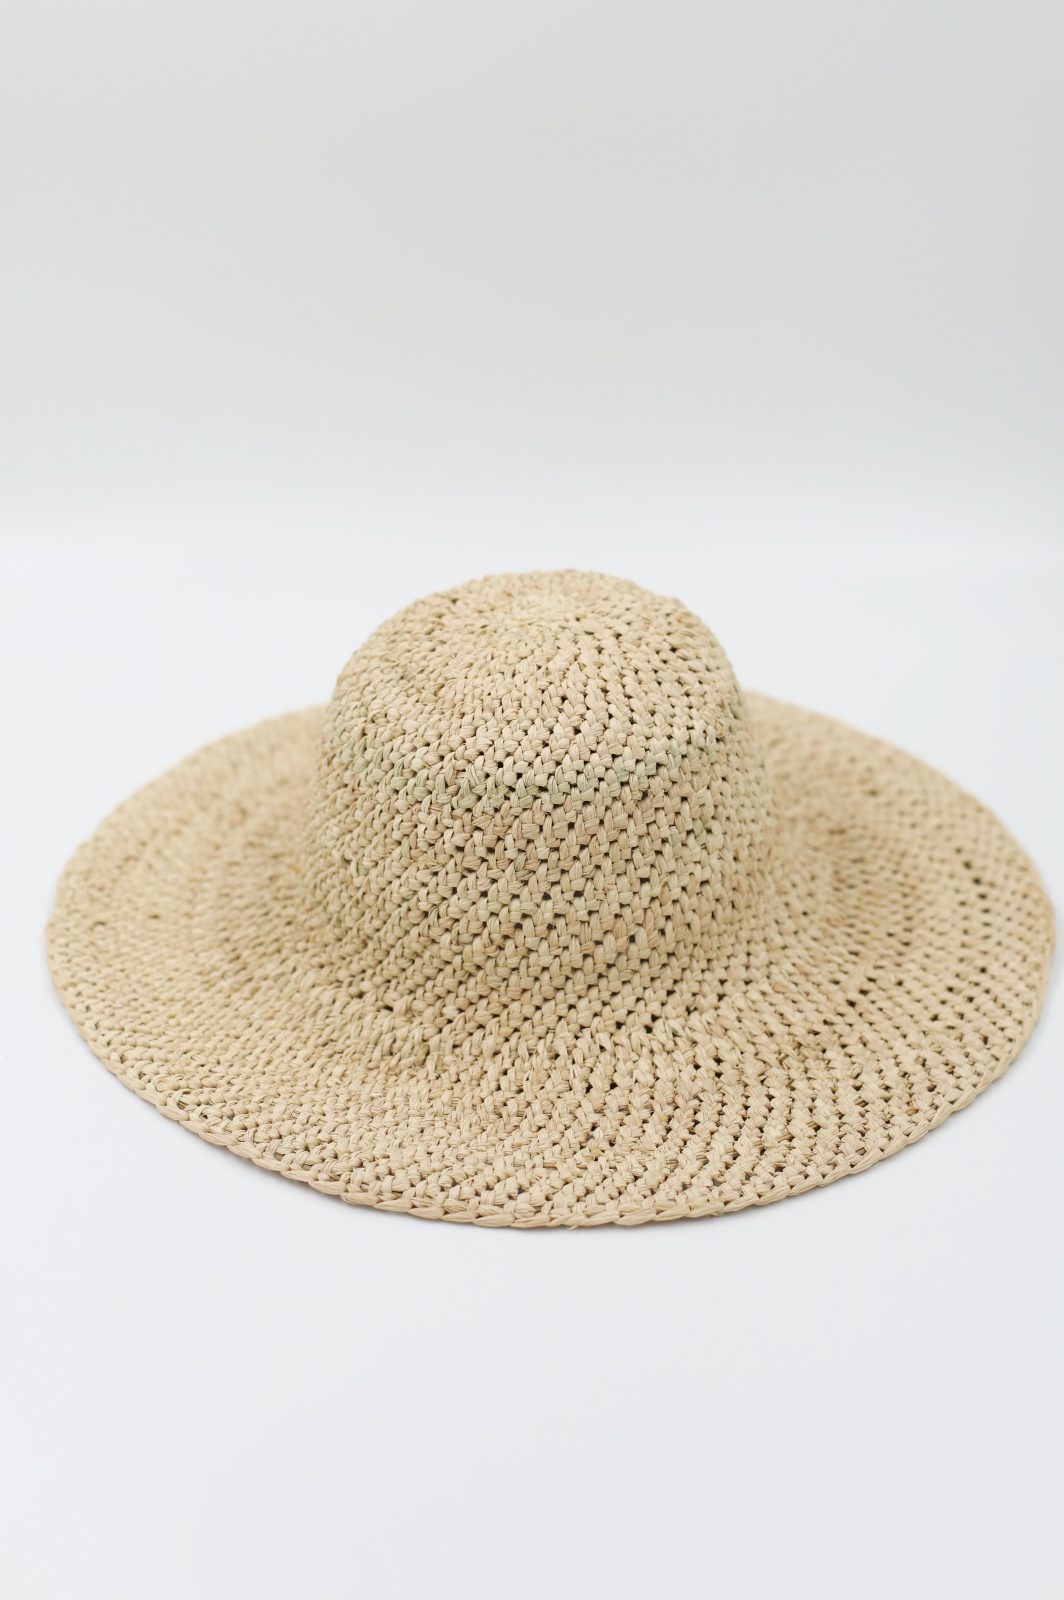 kapelusz słomkowy na lato sklep dobra fabryka dobrej fabryki nakrycie głowy afryka rwanda